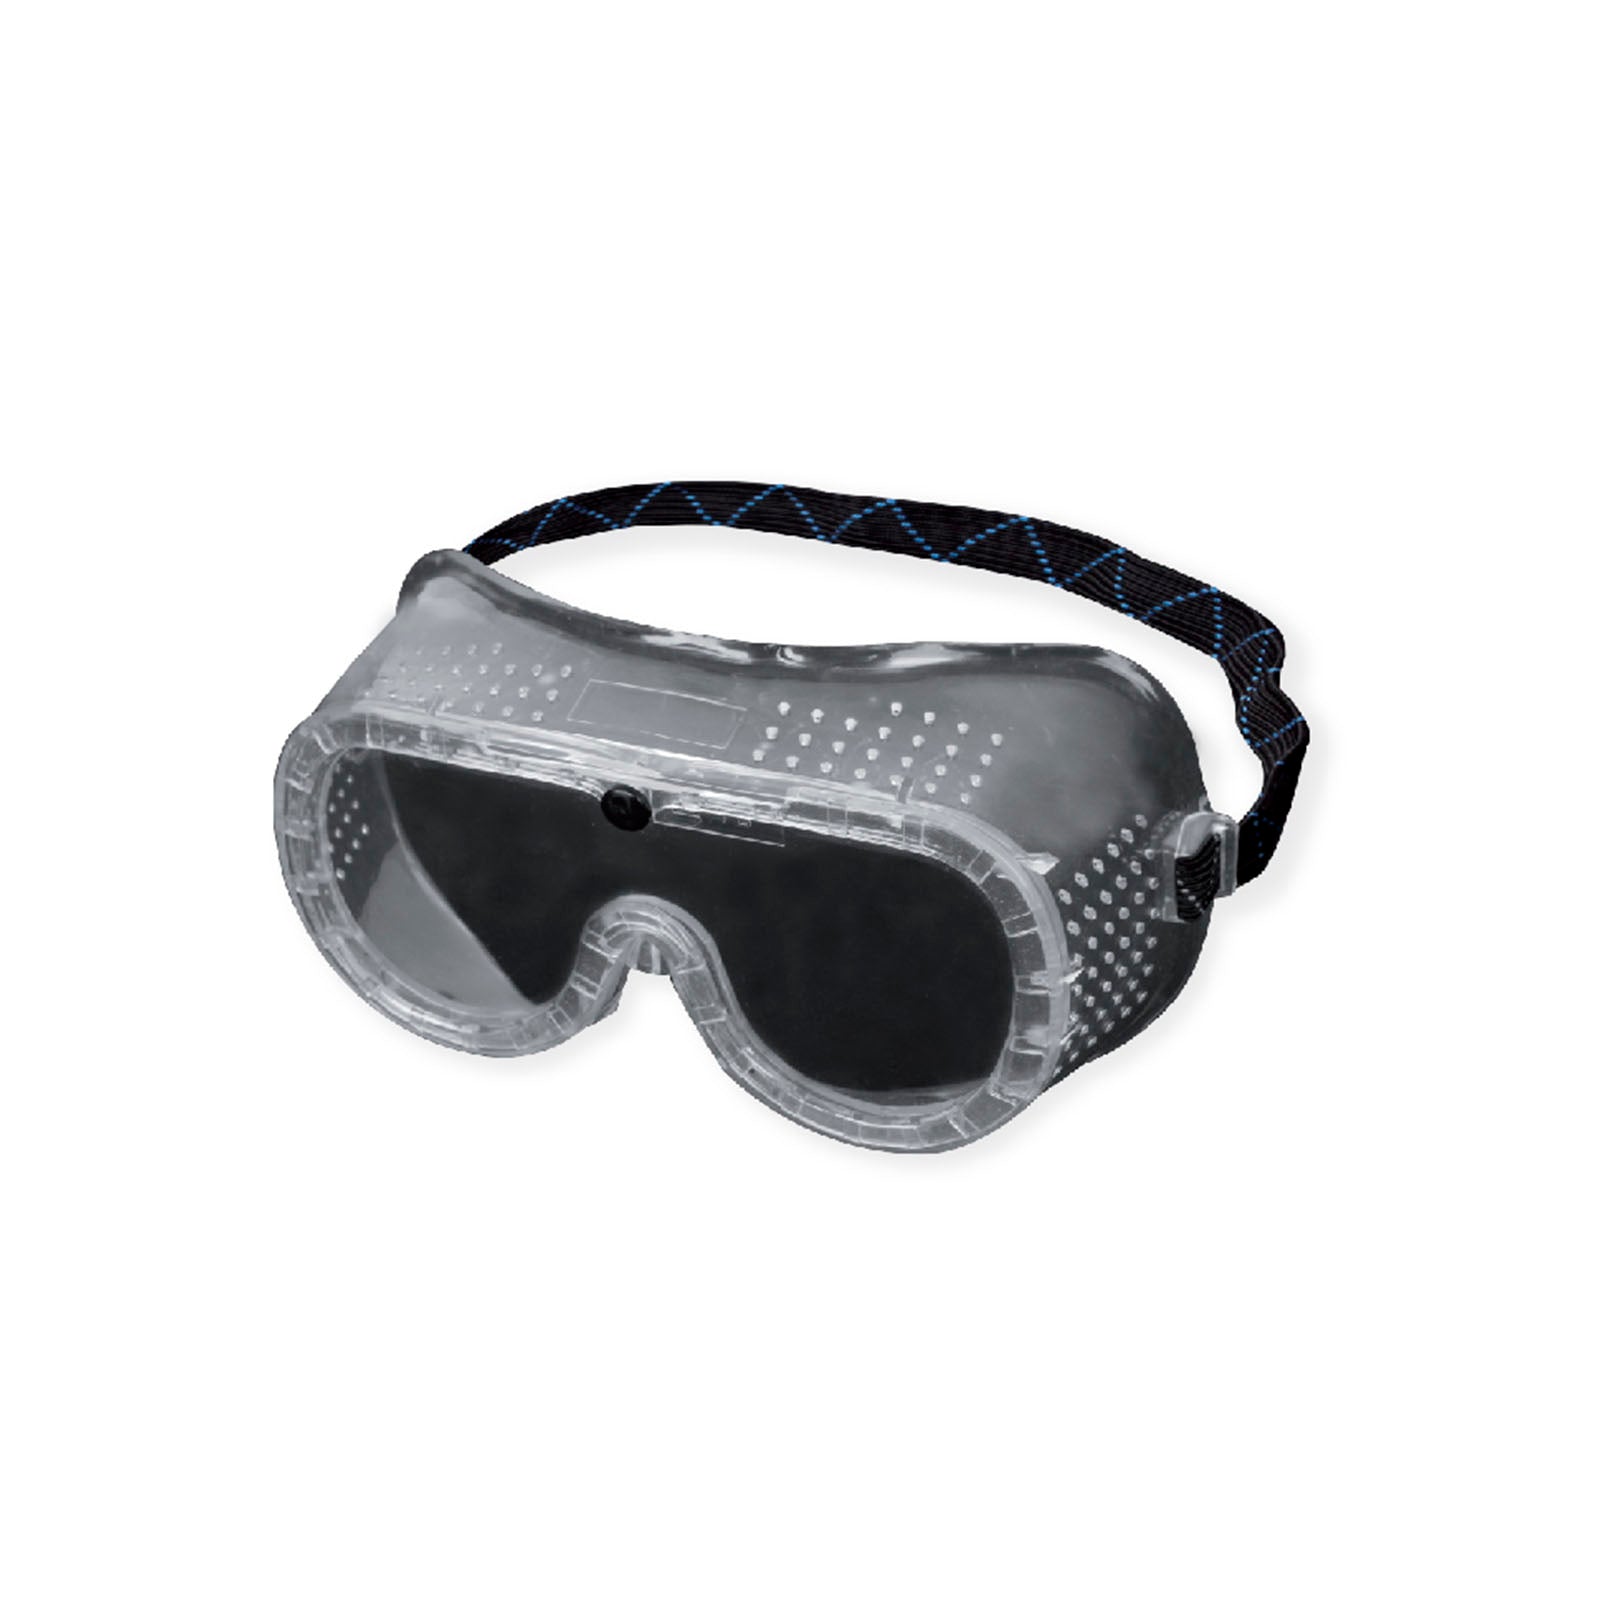 Goggles Industriales de Ventilación Directa WW-1300VD Jyrsa